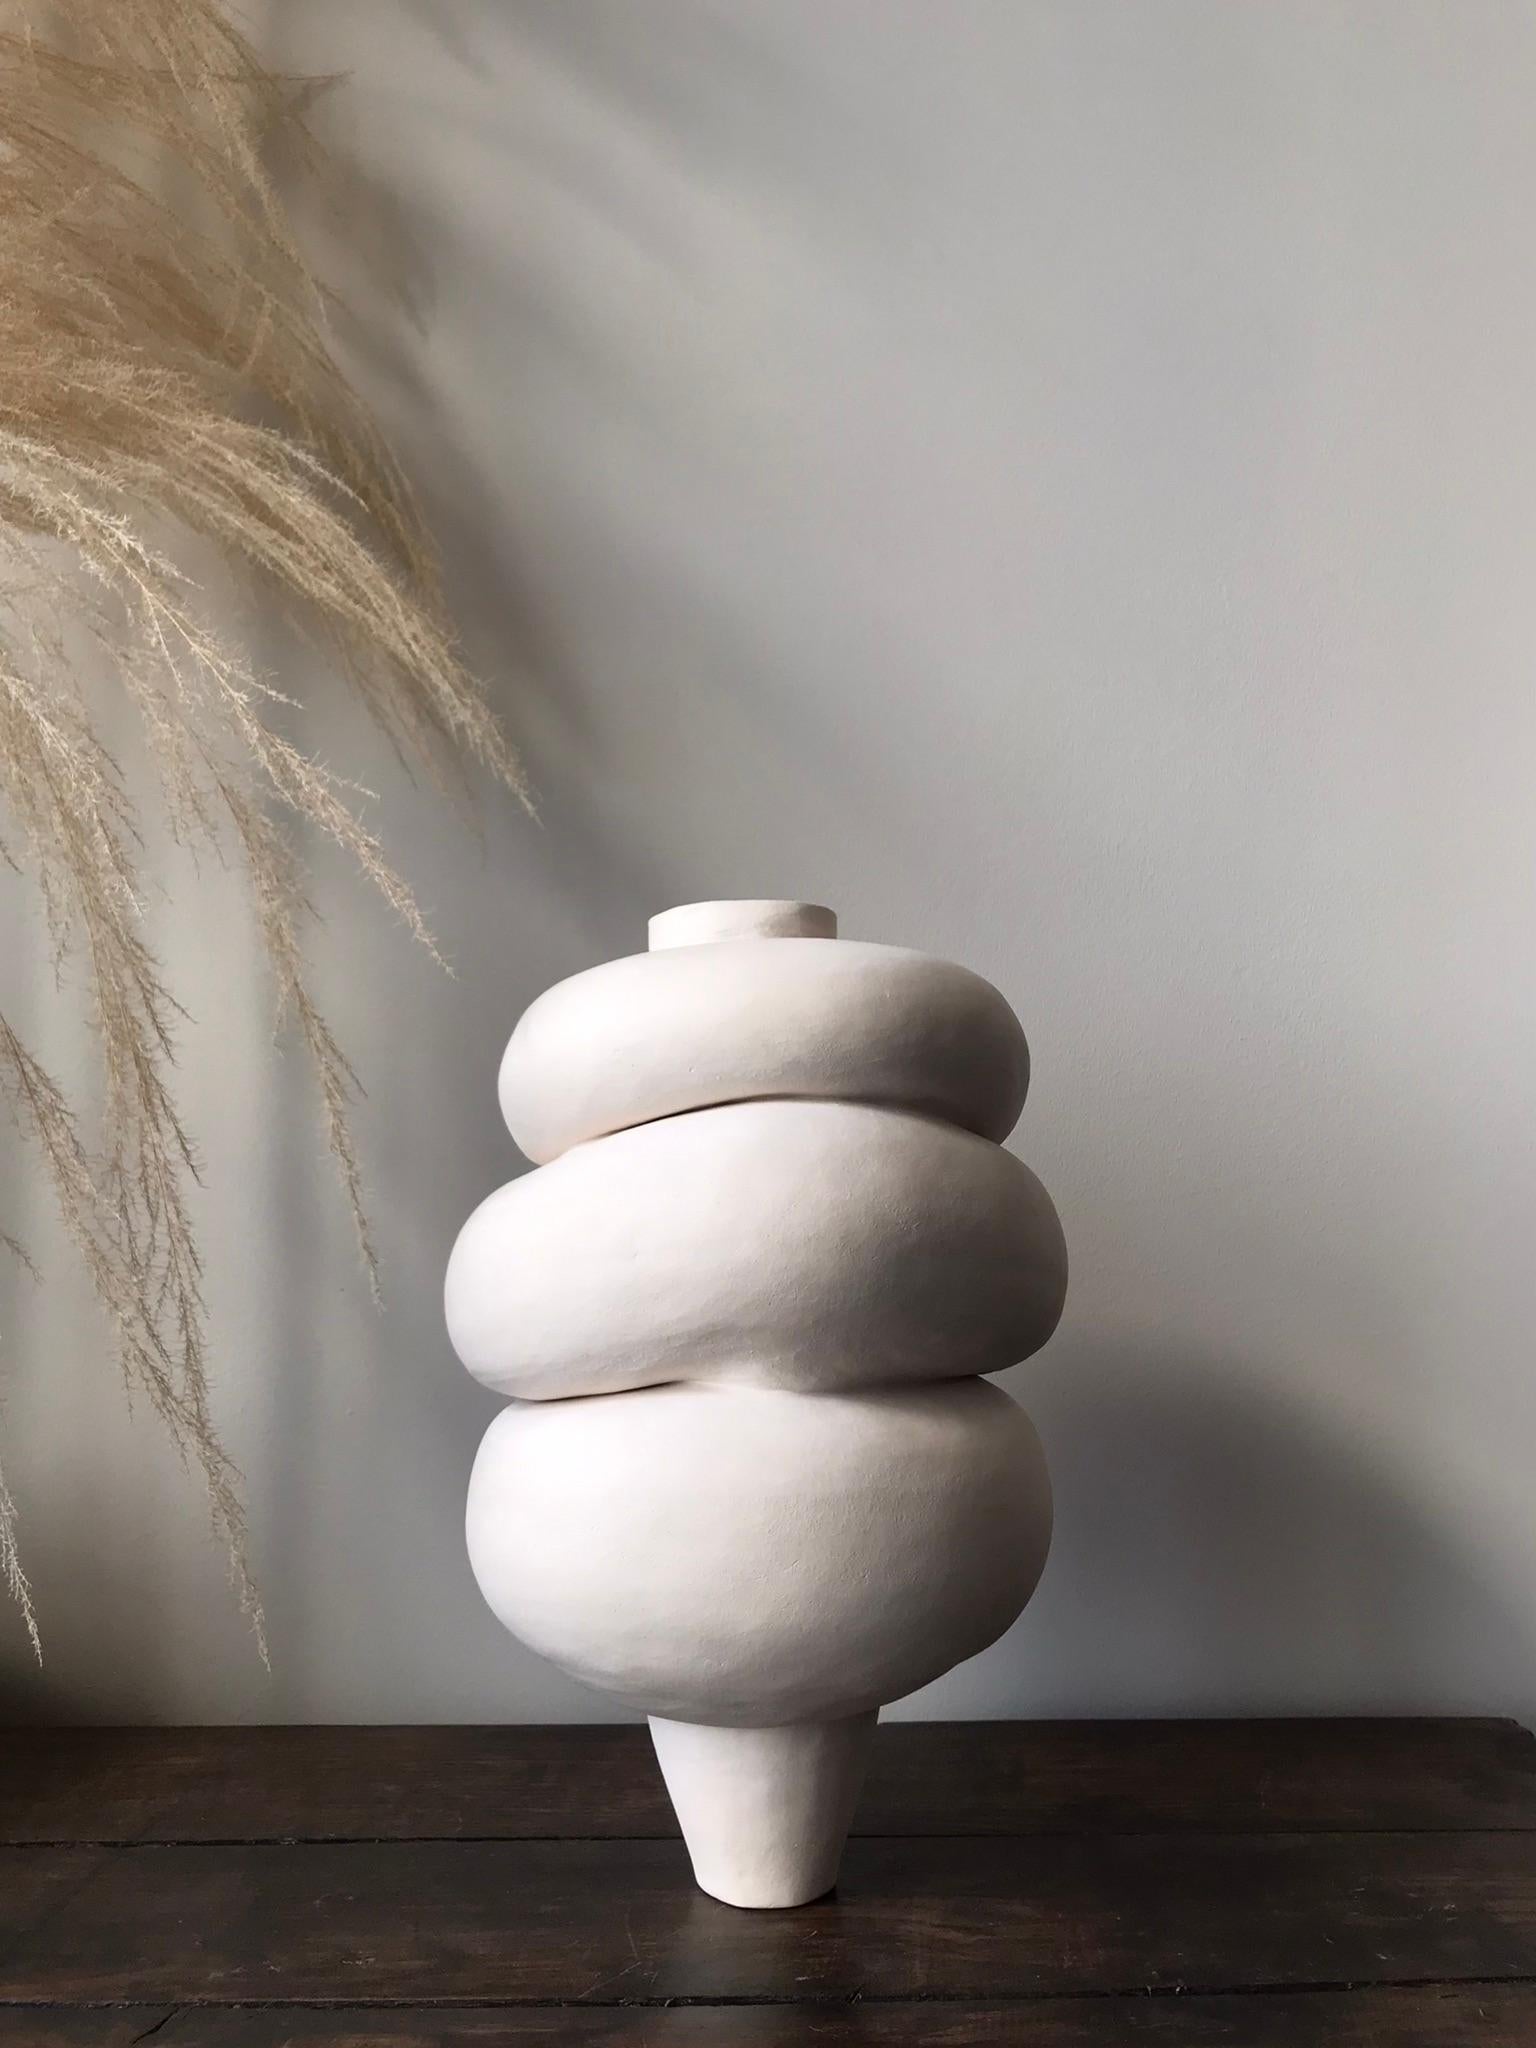 Ogni pezzo in ceramica di Françoise Jeffrey è fatto a mano, costruito a bobina, dalla forma organica e unico a modo suo, creando così un design essenziale e senza tempo. Perfettamente imperfetto, ispirato alla filosofia giapponese wabi-sabi.

Per